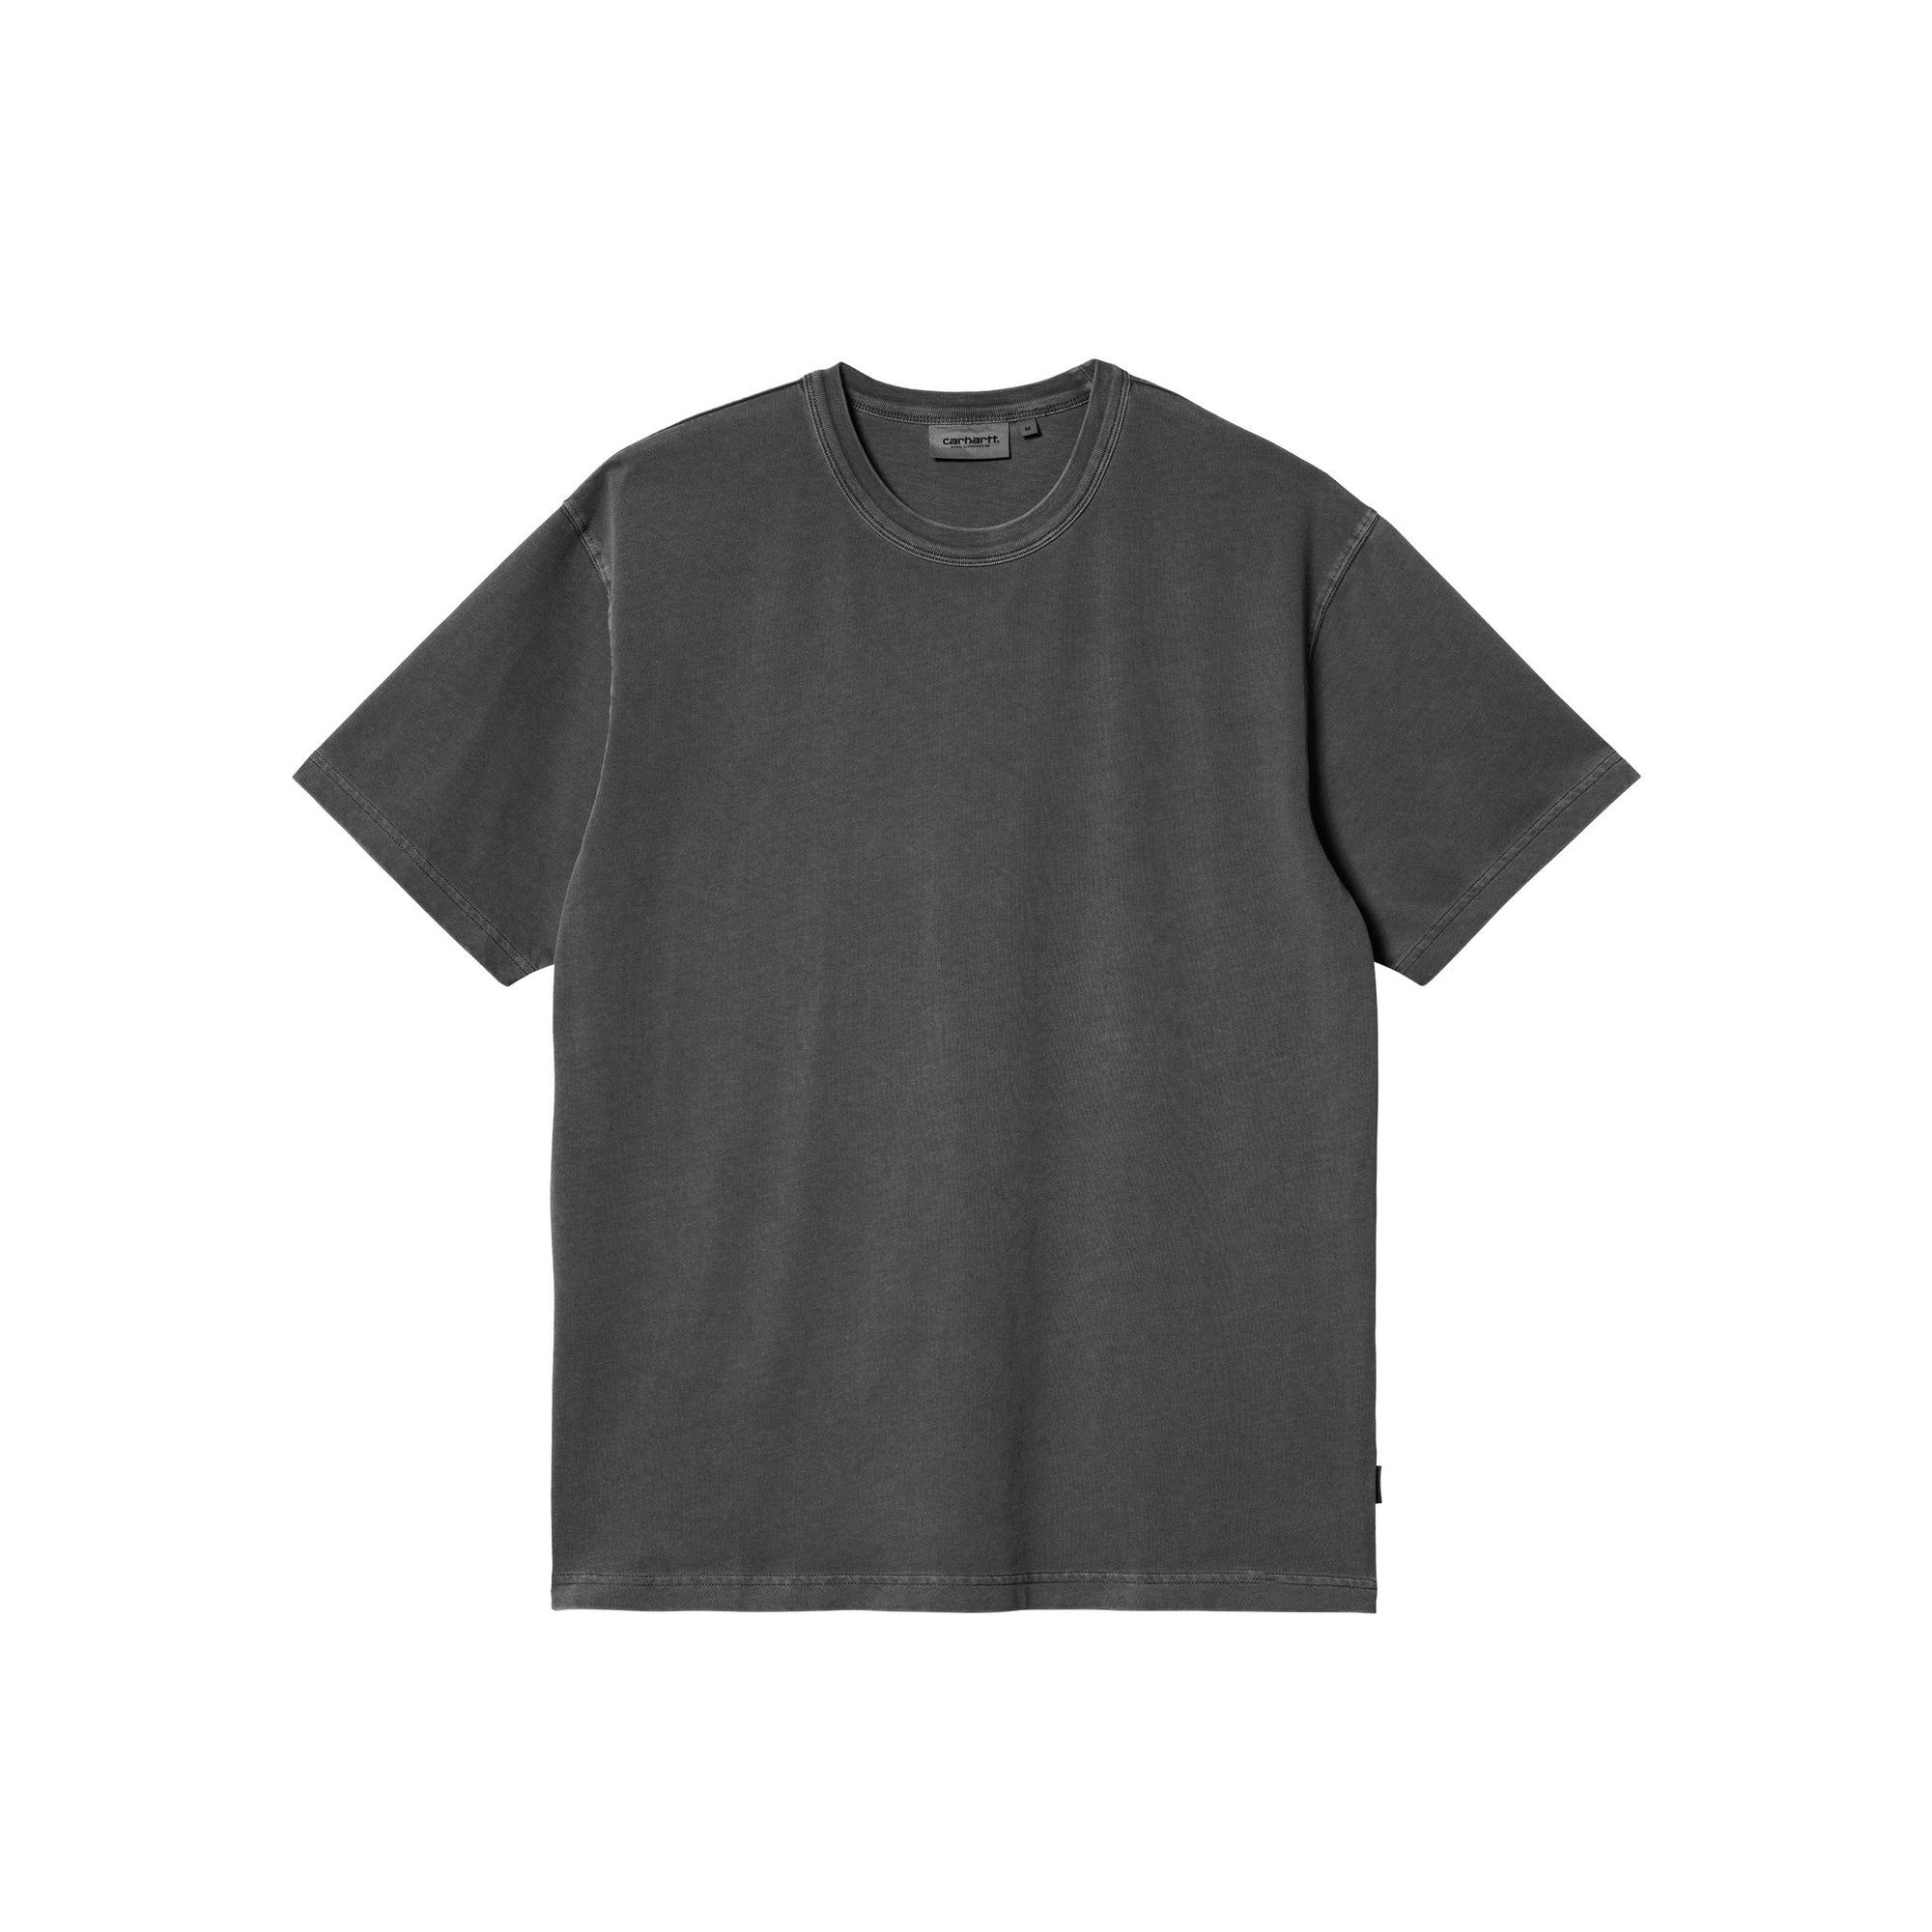 Carhartt WIP S/S Taos T-shirt (flint garment dyed) - Blue Mountain Store